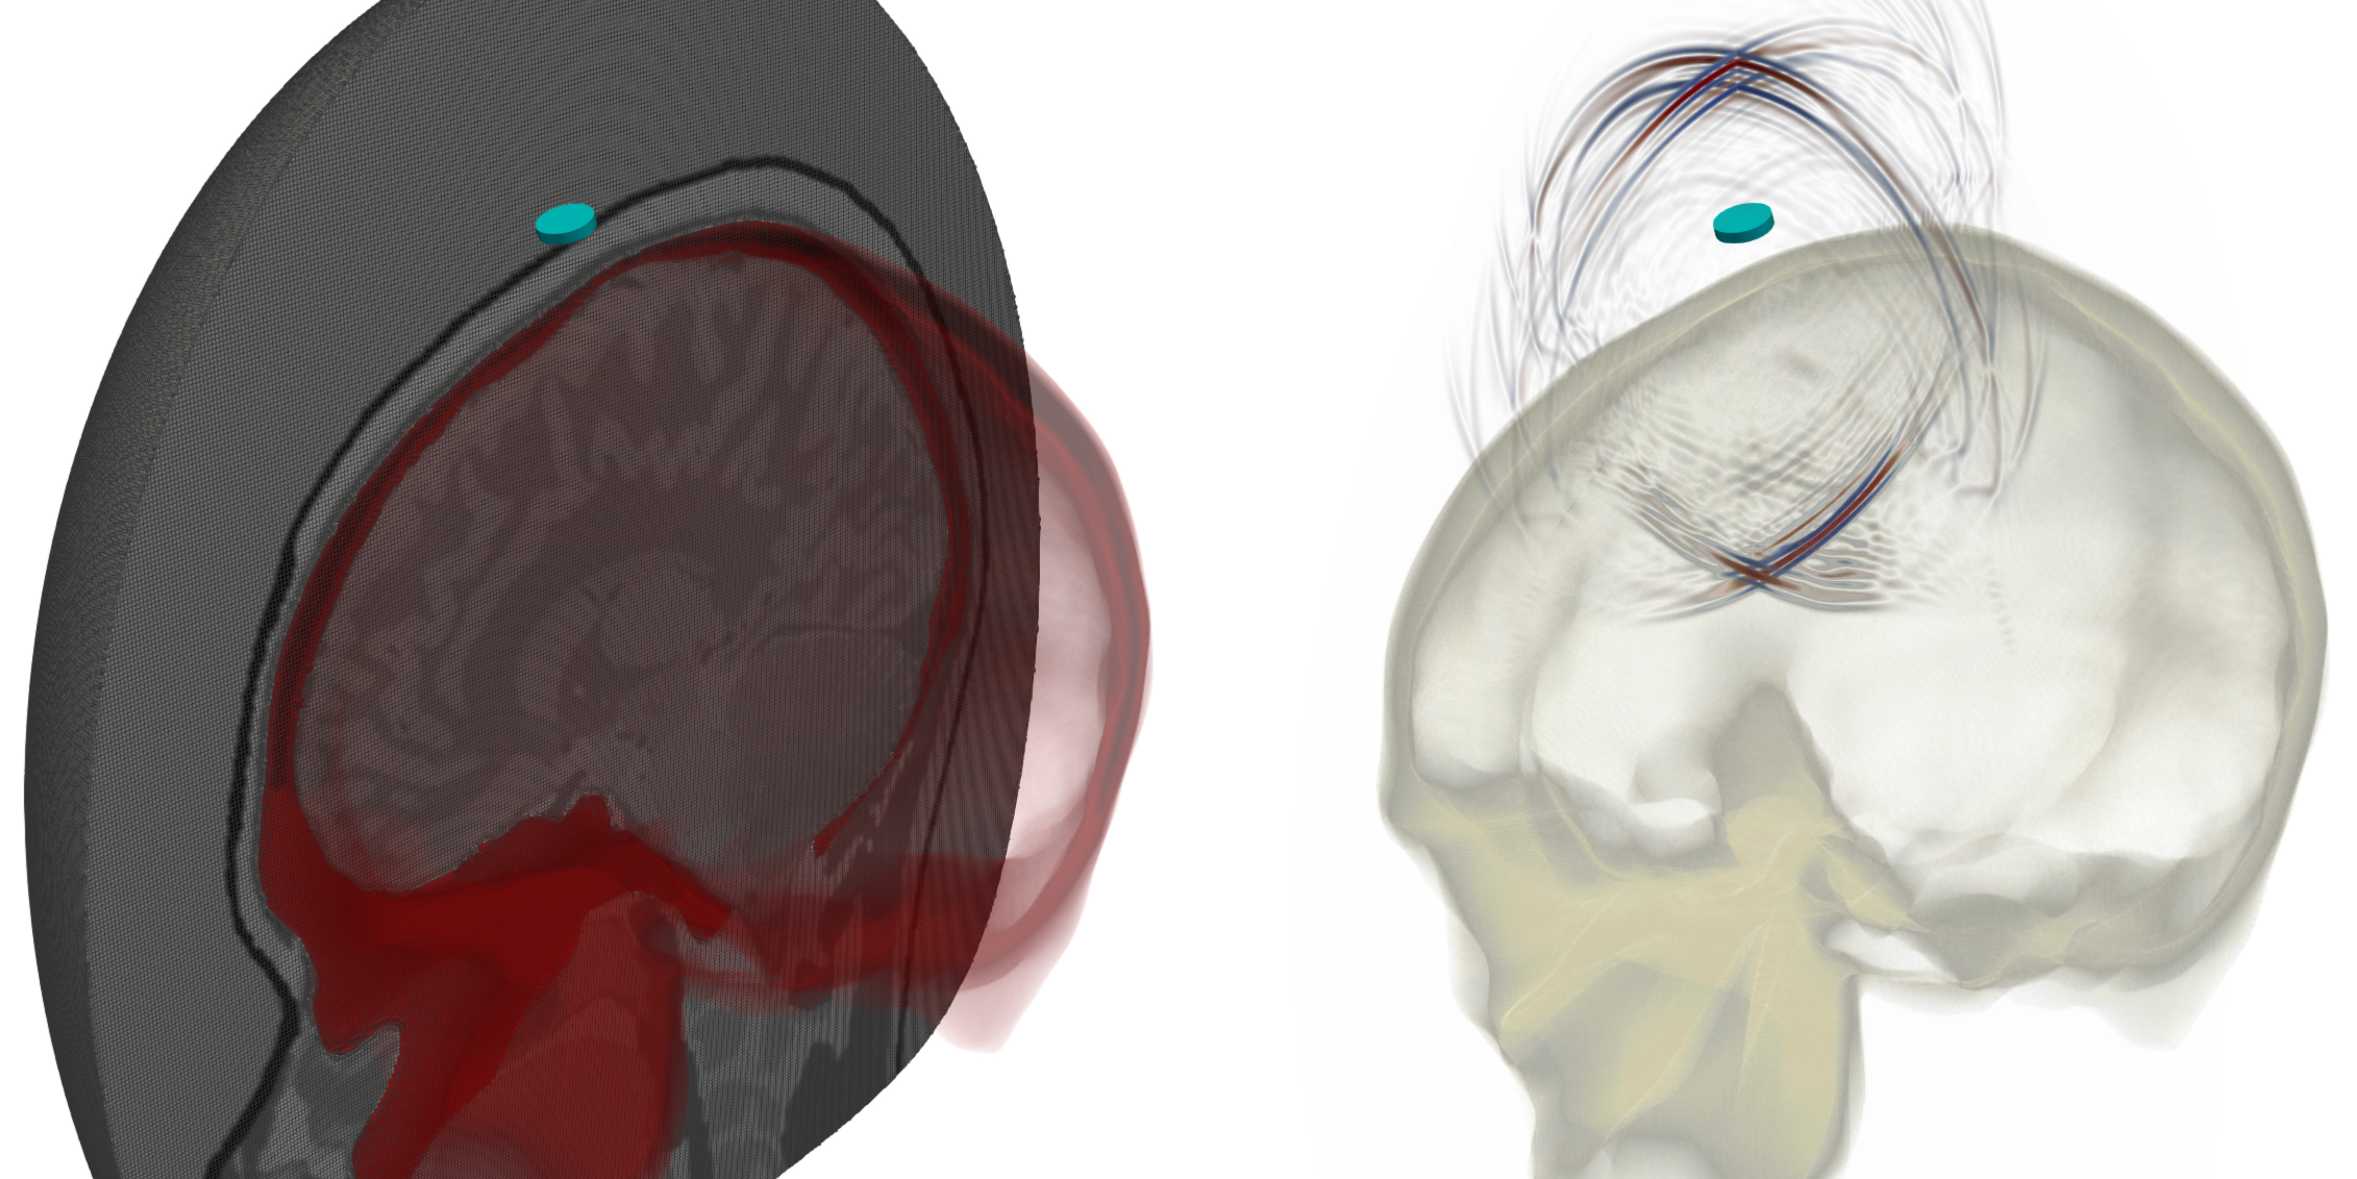 Zwei Bilder. Links zeigt ein hexaedrisches Finite-Elemente-Netz des Schädels und des Gehirns. Rechts: Eine Momentaufnahme der resultierenden Ultraschallsimulation. Die blaue Scheibe in beiden Bildern repräsentiert die Ultraschallquelle.